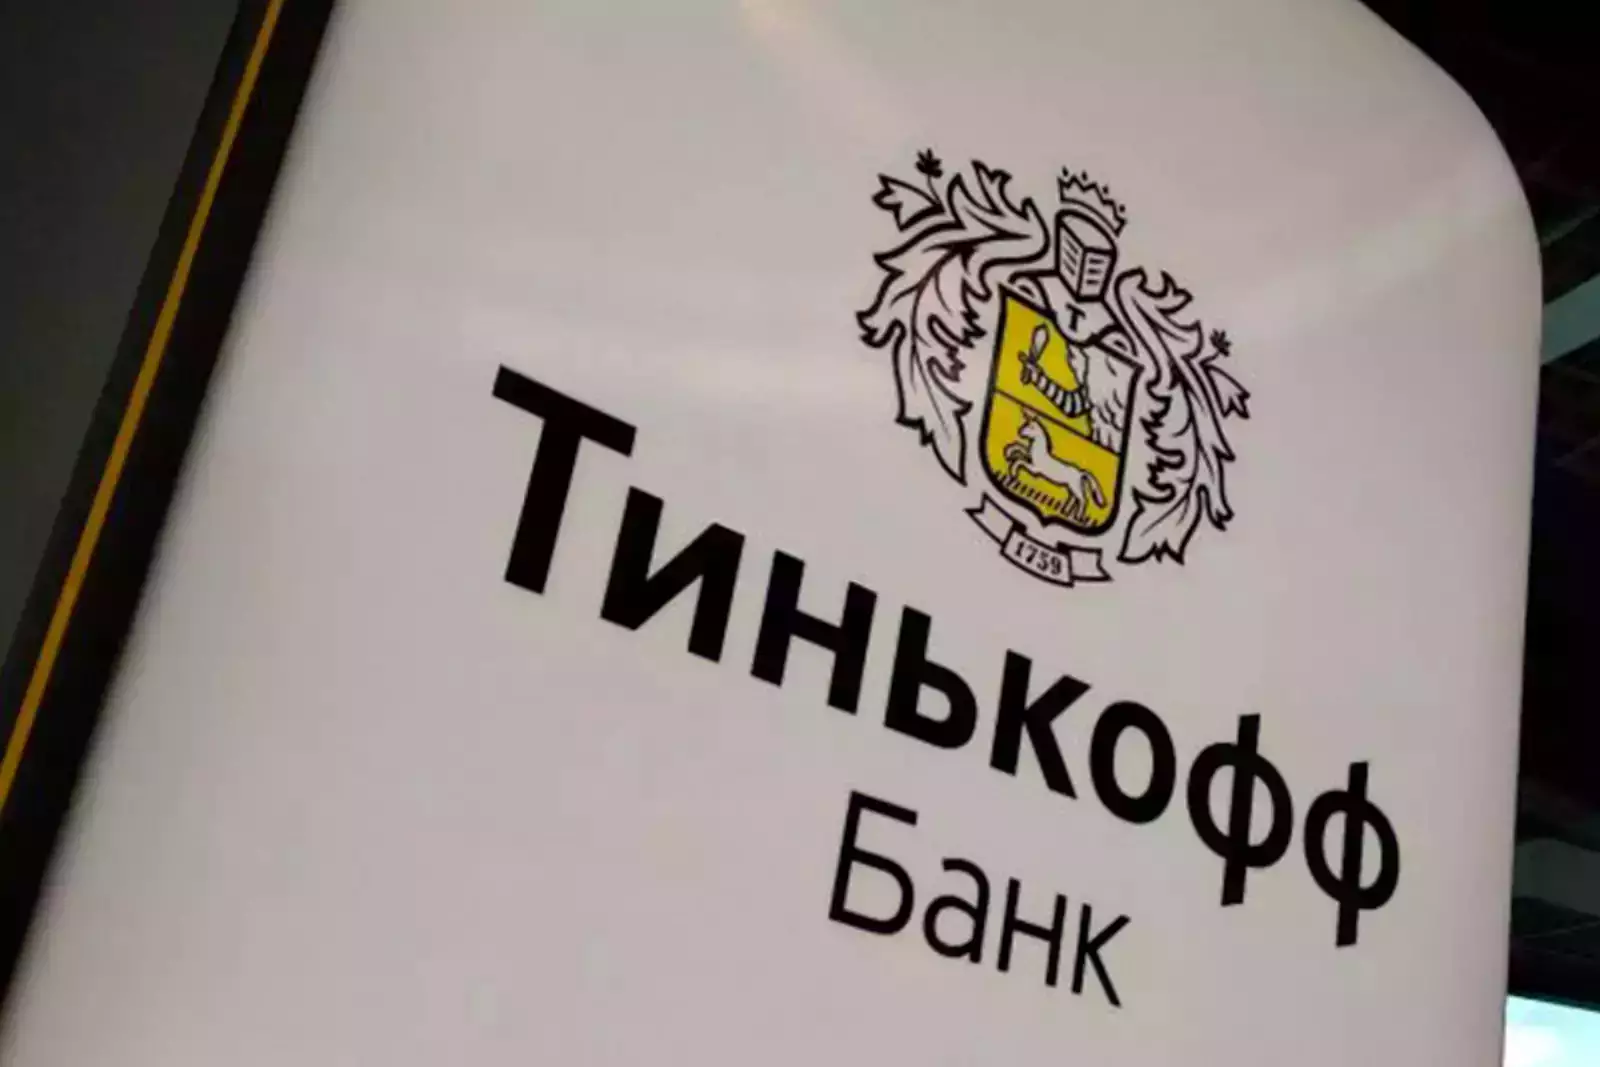 Тинькофф государственный банк